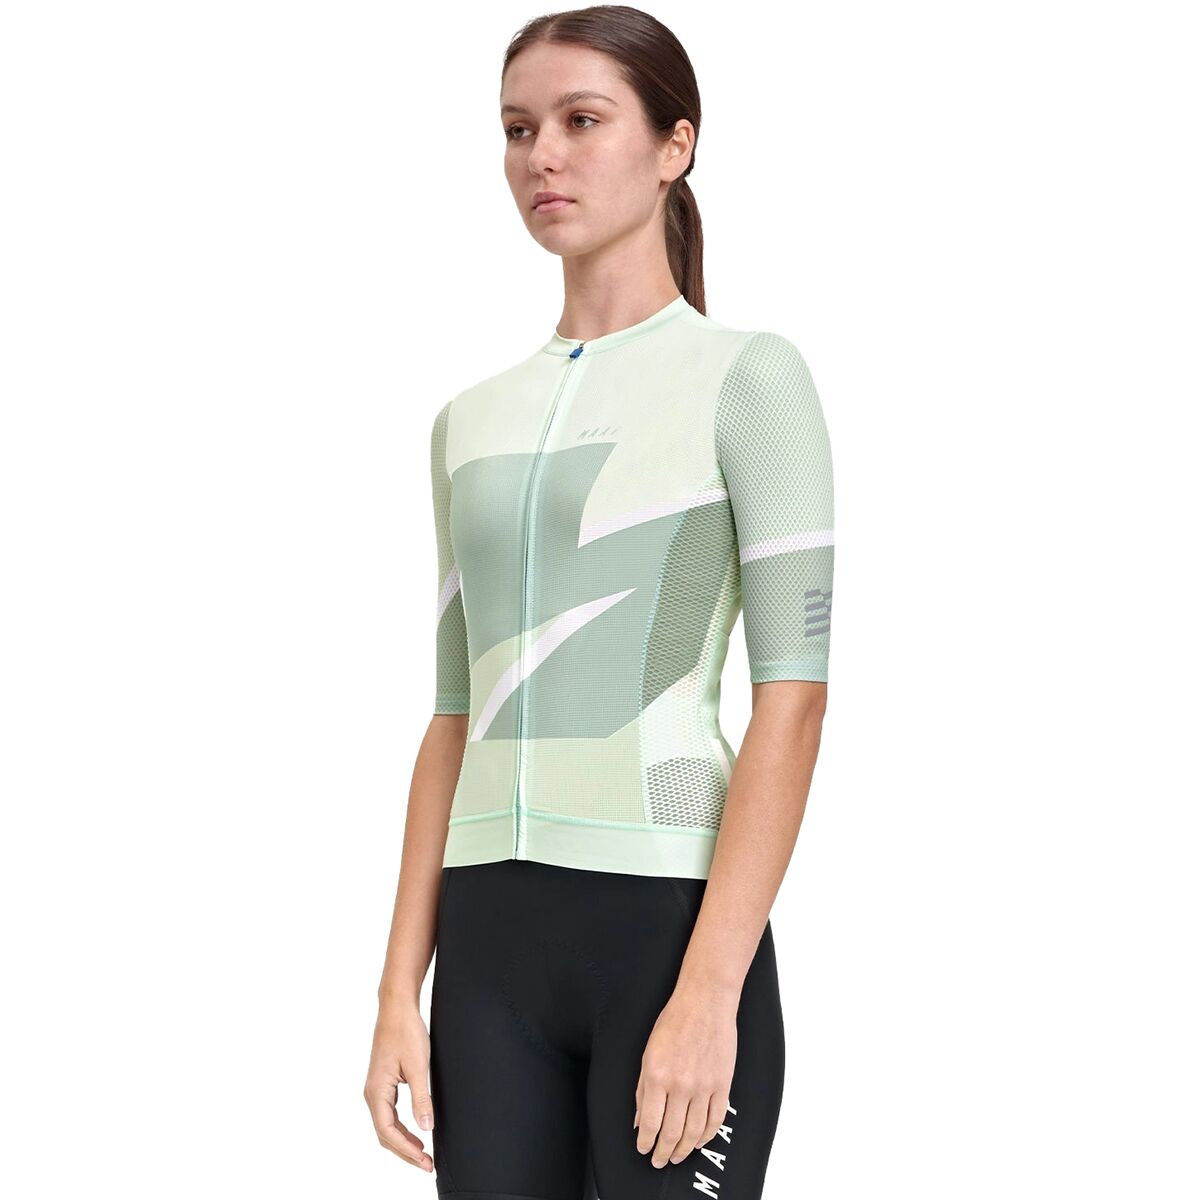 MAAP Evolve 3D Pro Air Short-Sleeve Jersey - Women's Pale Jade, XL